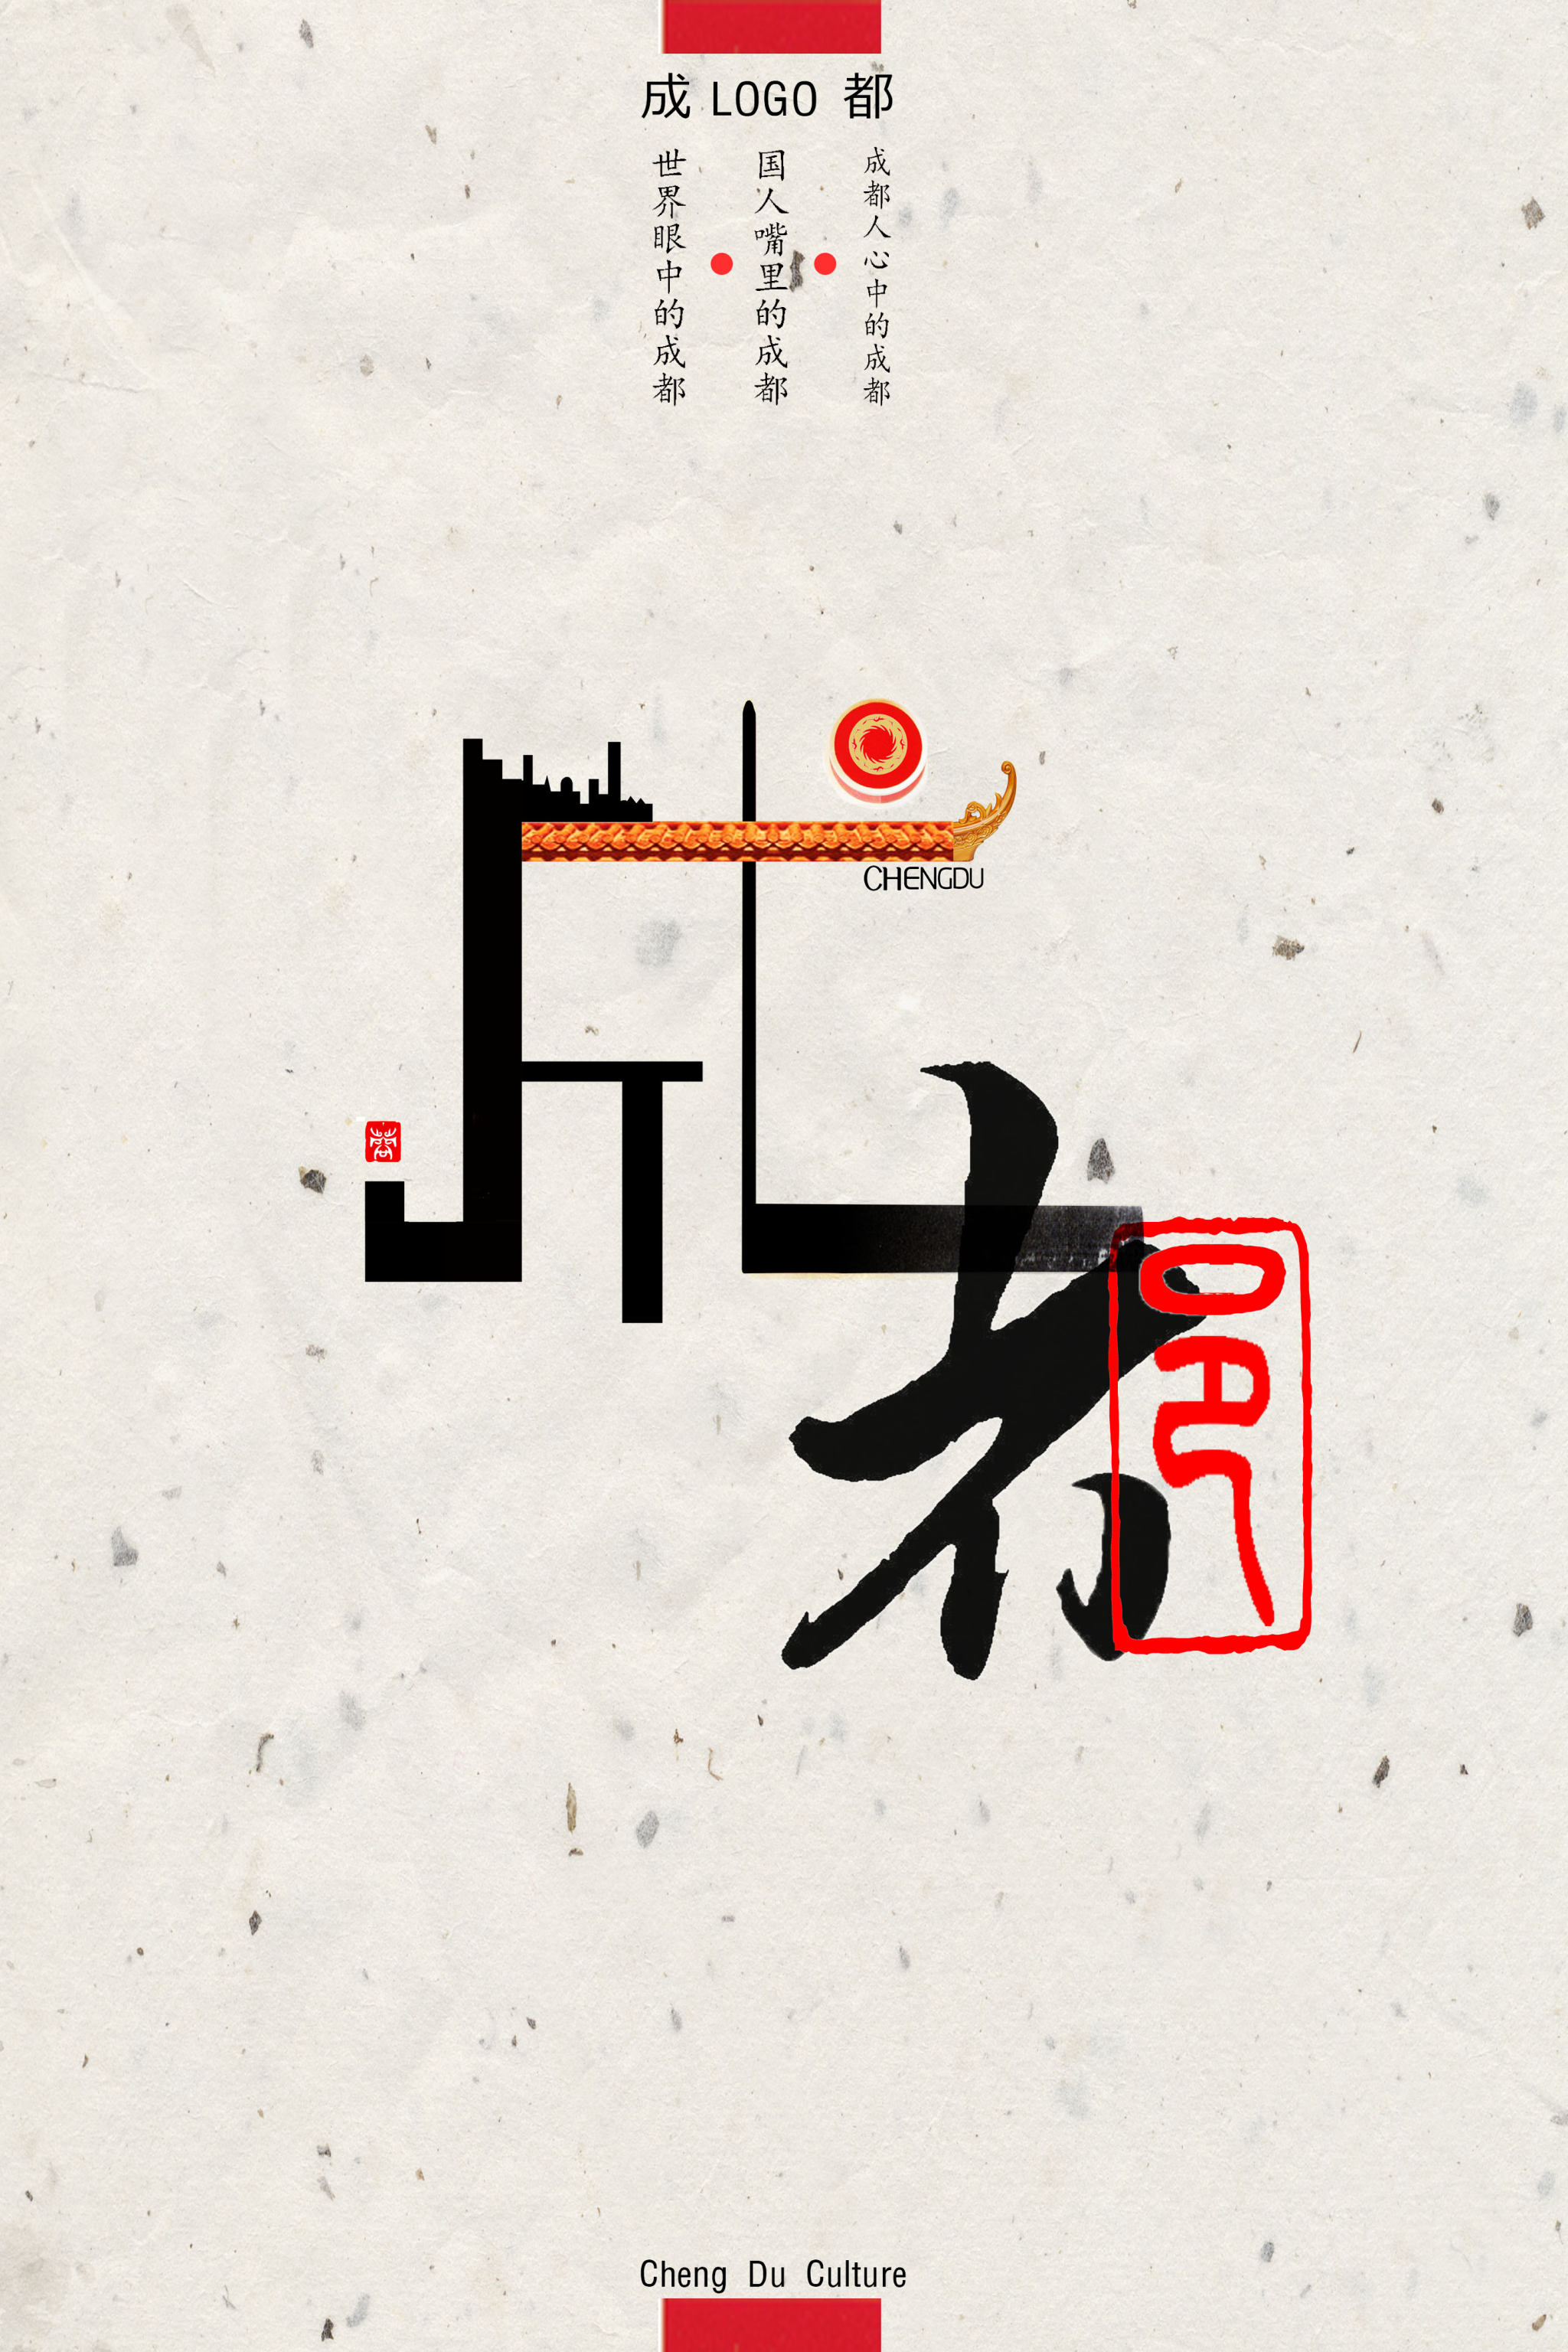 这是logo的宣传海报,将现代字体和古代书法结合,表达从成都"制造"到